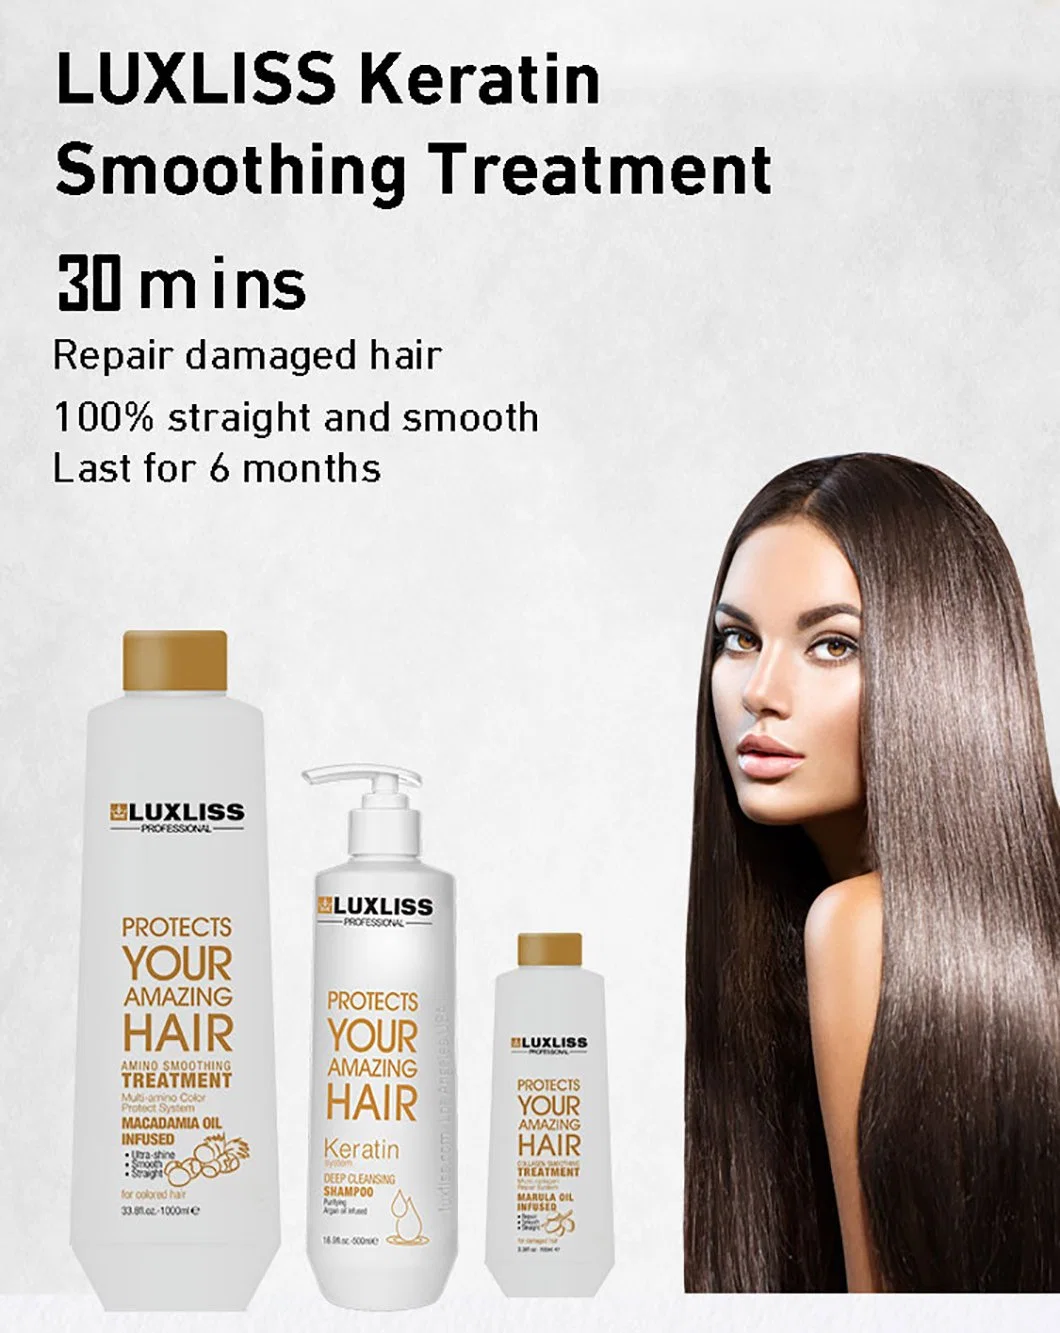 Luxliss profesional Cuidado del pelo Keratin tratamiento de smoothing